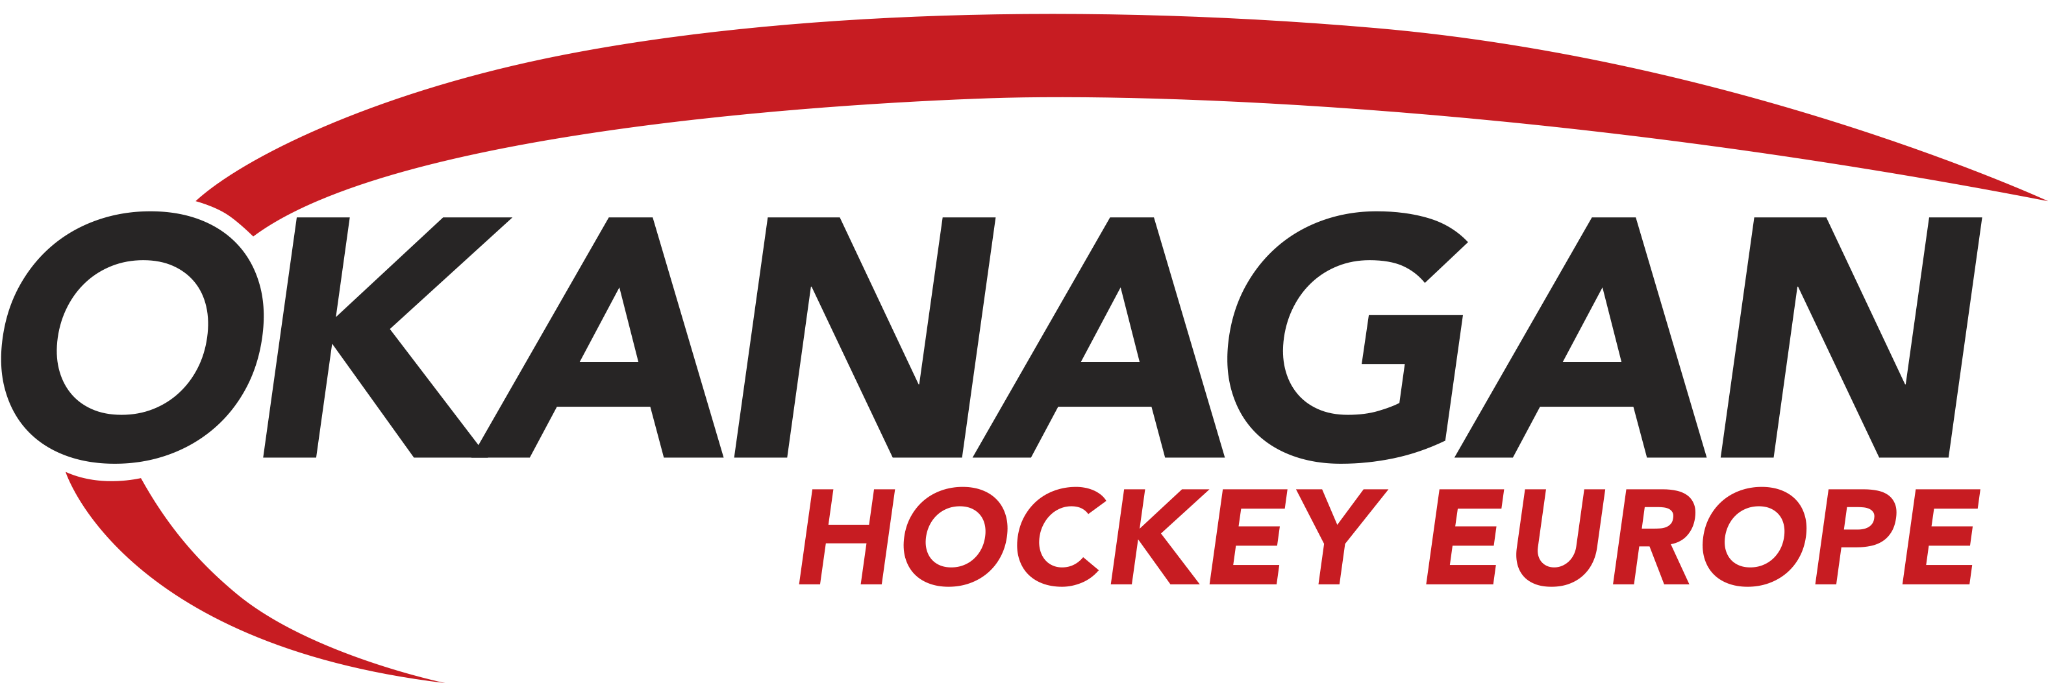 Okanagan Hockey School Europe